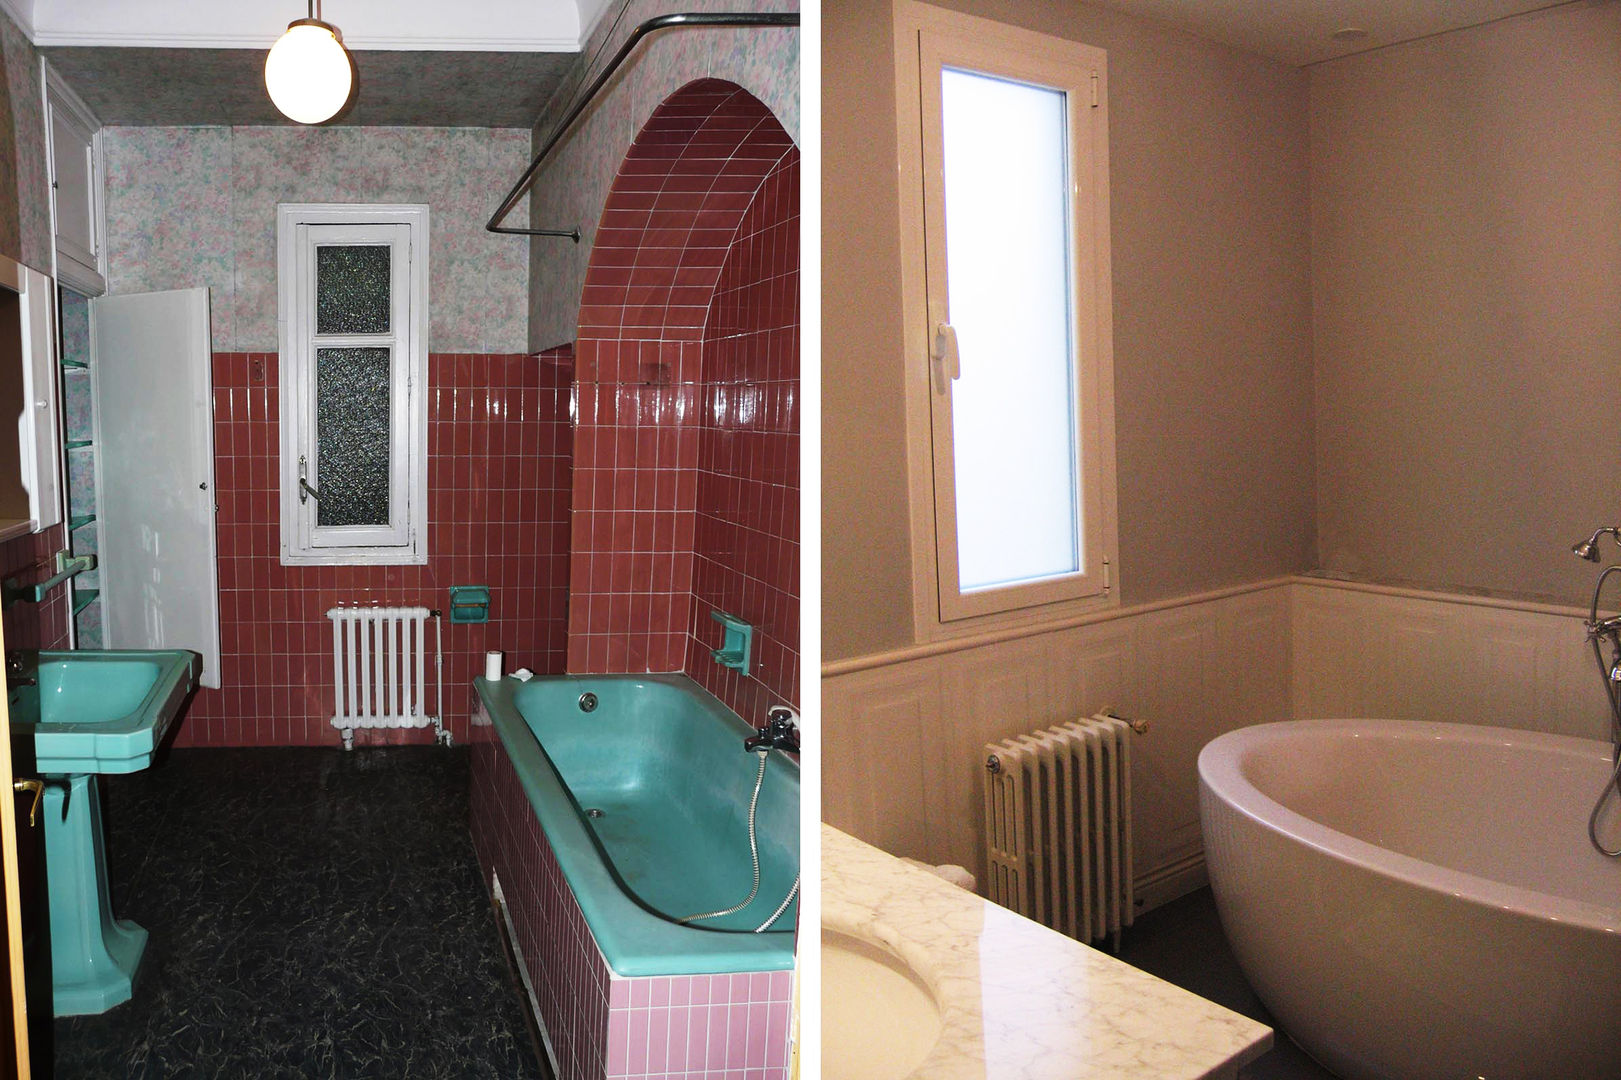 Vista del baño principal antes y después de la reforma. CPETC Baños modernos